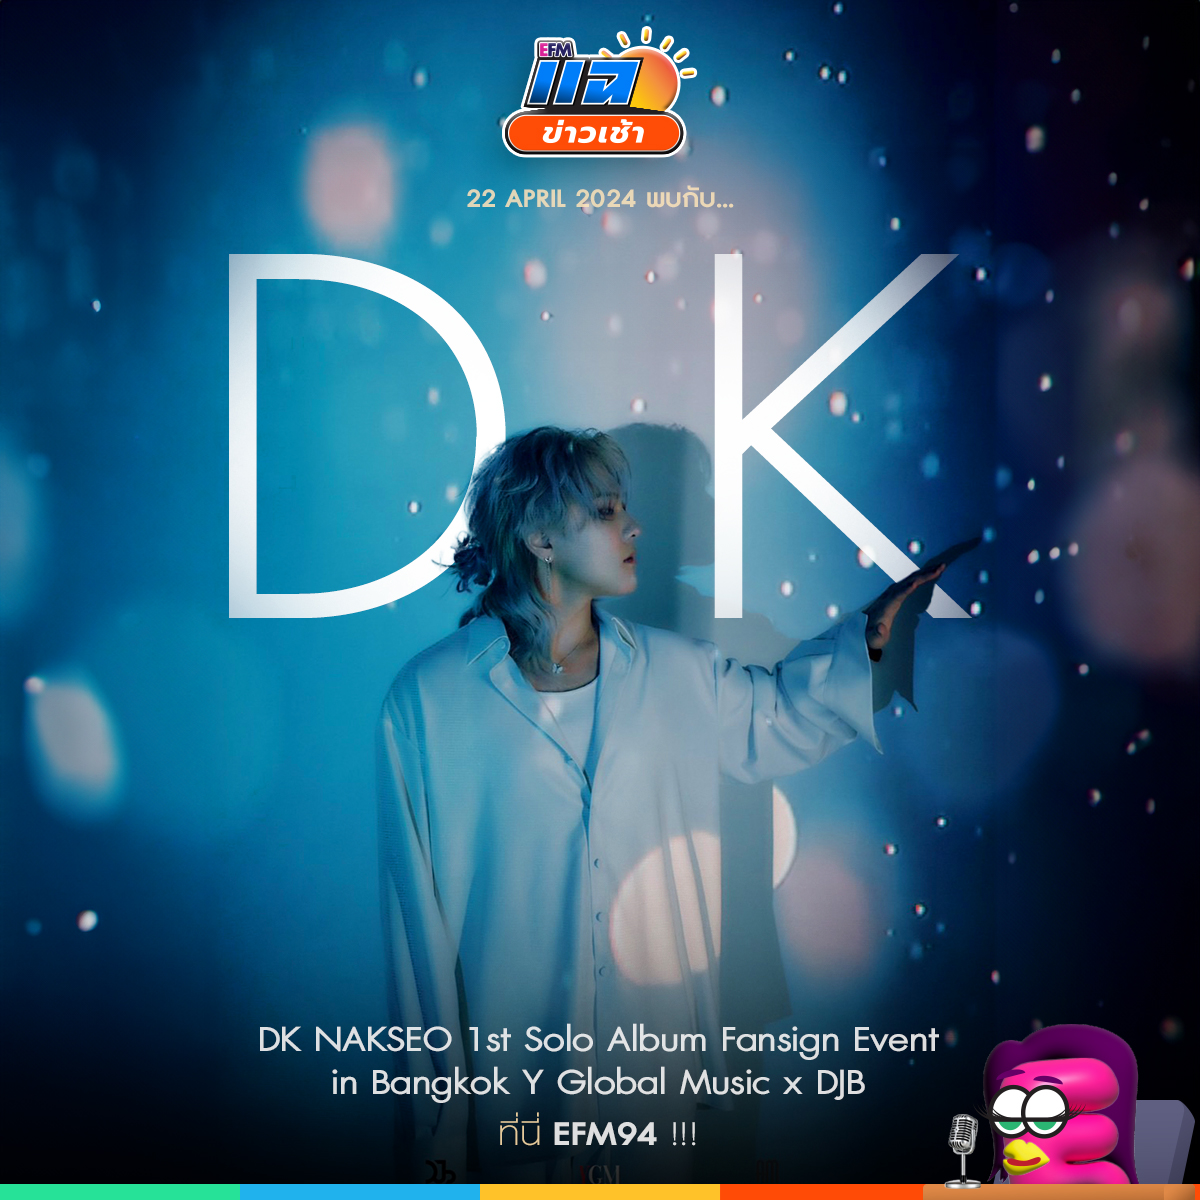 จันทร์ที่ 22 เมษายนนี้ #แฉข่าวเช้า เปิดสตูต้อนรับ 'DK คิมดงฮยอก วง IKON' พูดคุยหลังงาน 'DK NAKSEO 1st Solo album Fansign Event in Bangkok Y Global x DJB' เจอกันเวลา 8 - 10 โมงเช้า ทาง #EFM94 ติดตาม LIVE ทาง Facebook/Tiktok: EFM station และYoutube: ATIME #DK_NAKSEO_FansigninBKK